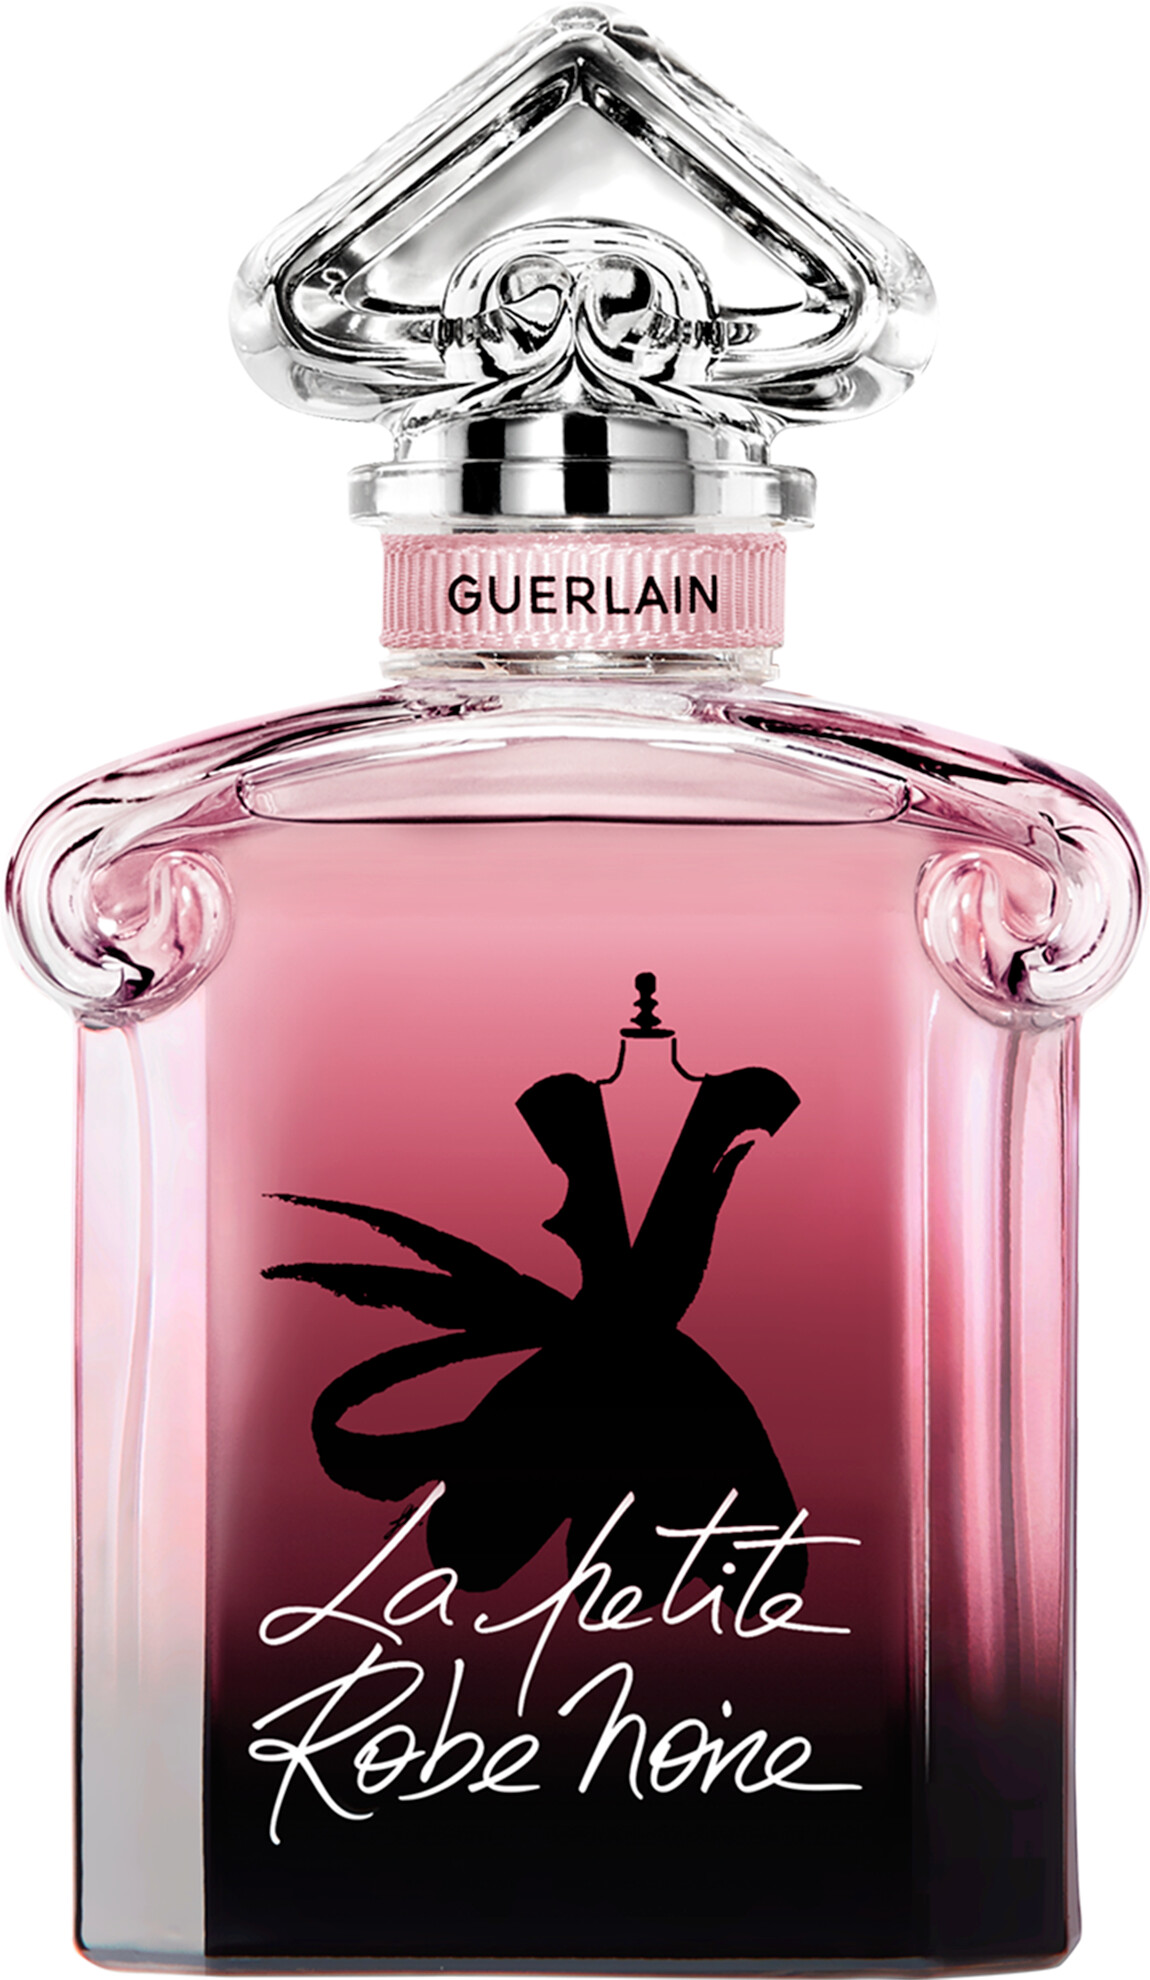 GUERLAIN La Petite Robe Noire Eau de Parfum Intense Spray 50ml